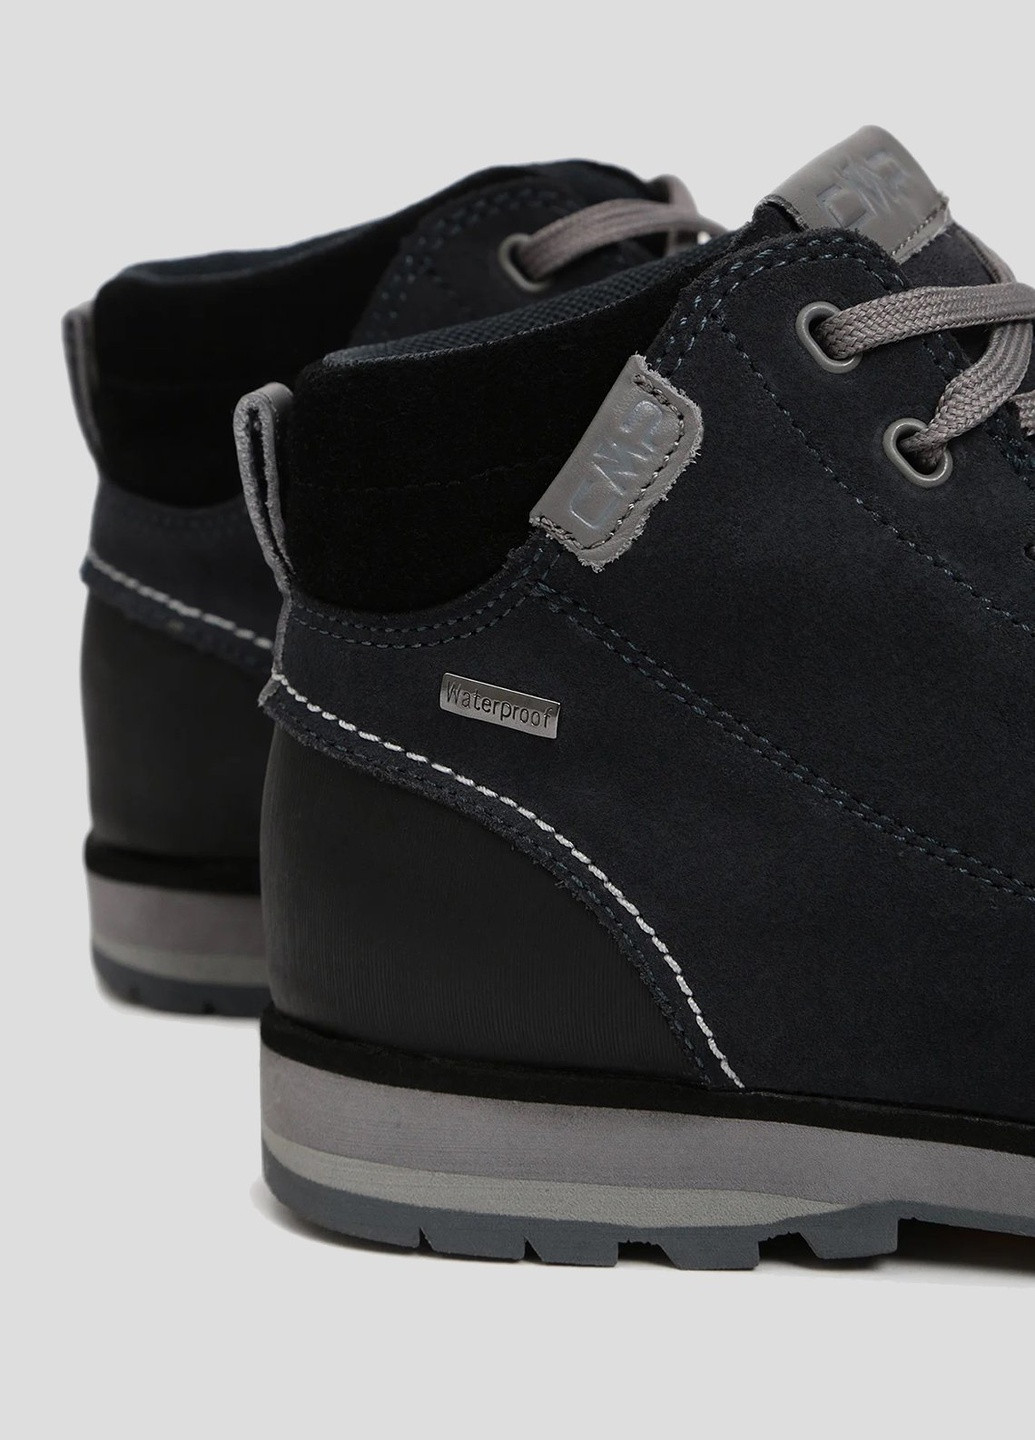 Серые демисезонные темно-серые ботинки для треккинга elettra mid hiking shoes wp CMP